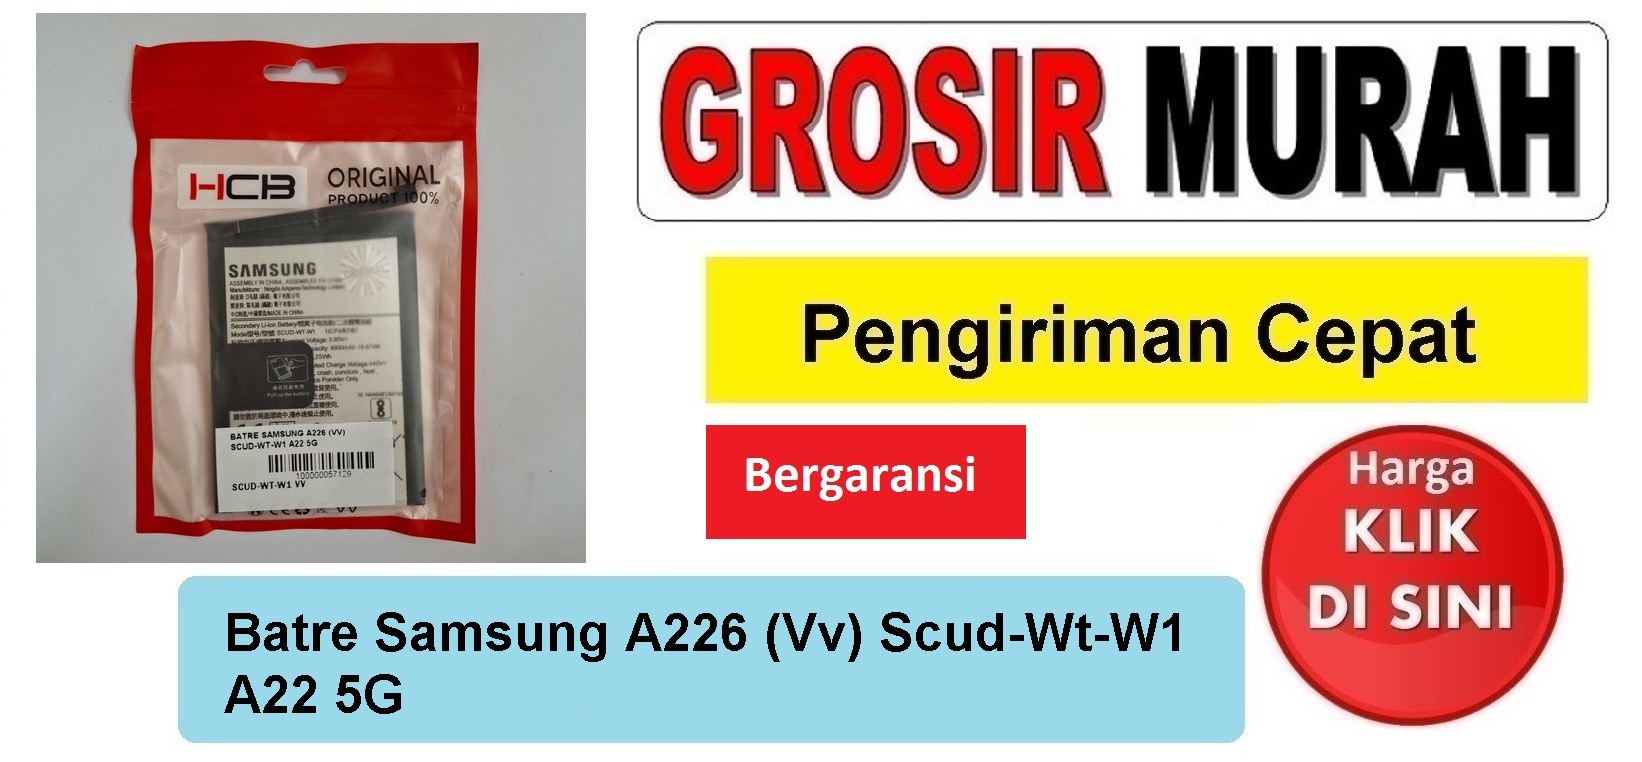 Batre Samsung A226 (Vv) Scud-Wt-W1 A22 5G Baterai Battery Bergaransi Batere